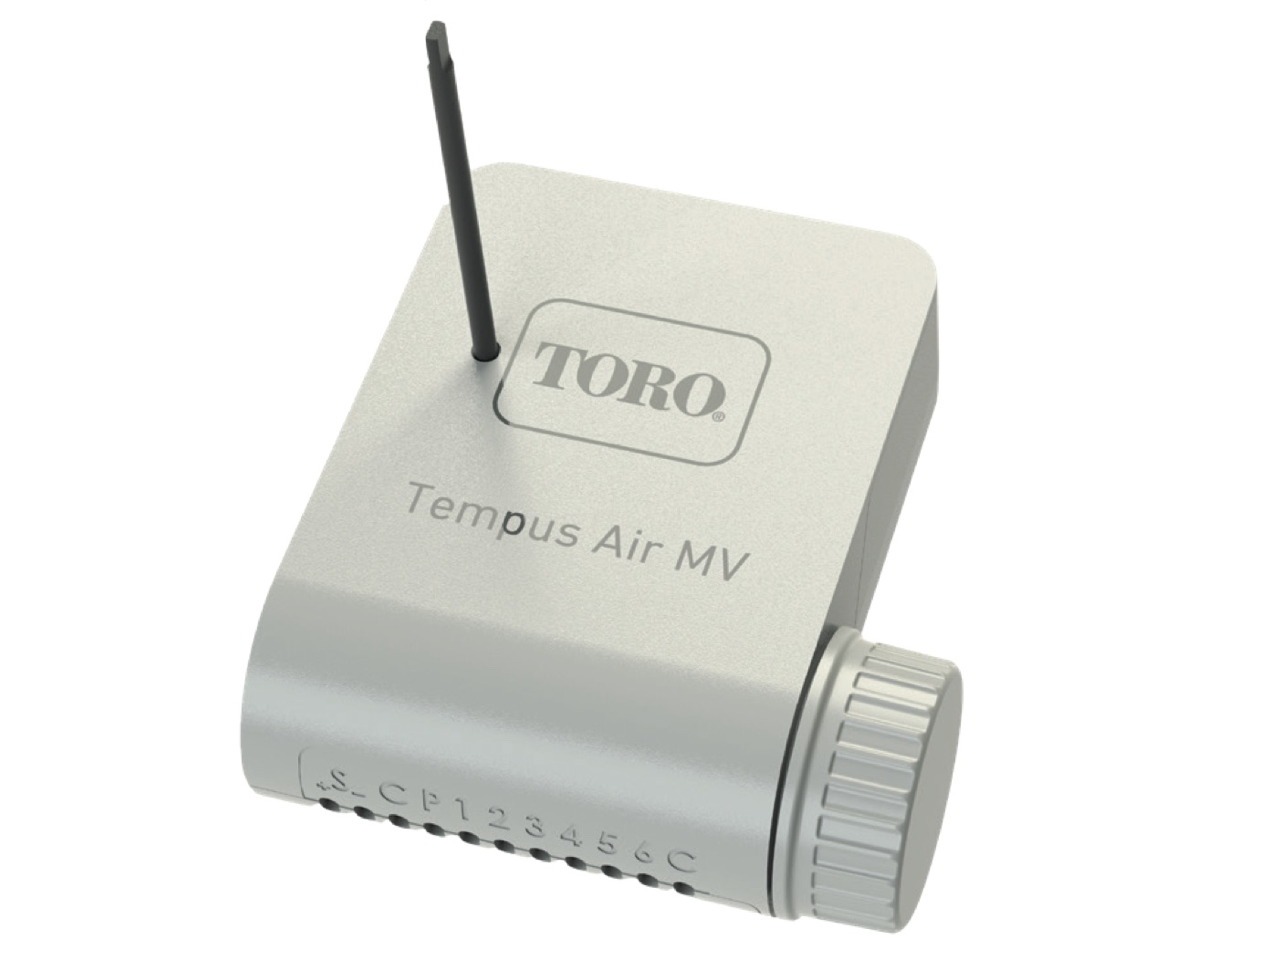 The Toro Company Tempus Air MV